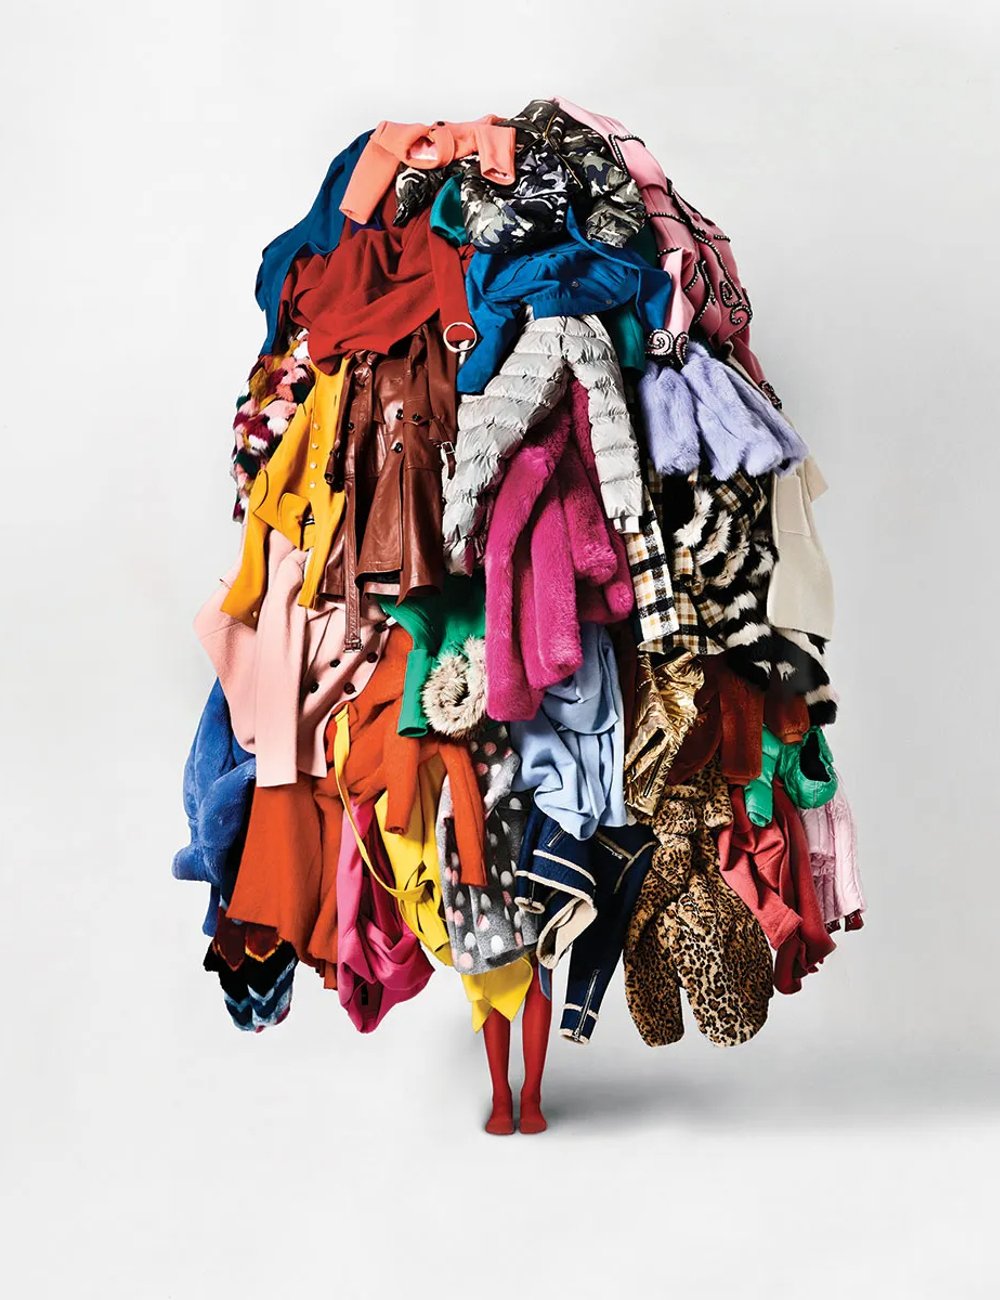 Roupas - armário - organizar as roupas - organização - decor - https://stealthelook.com.br